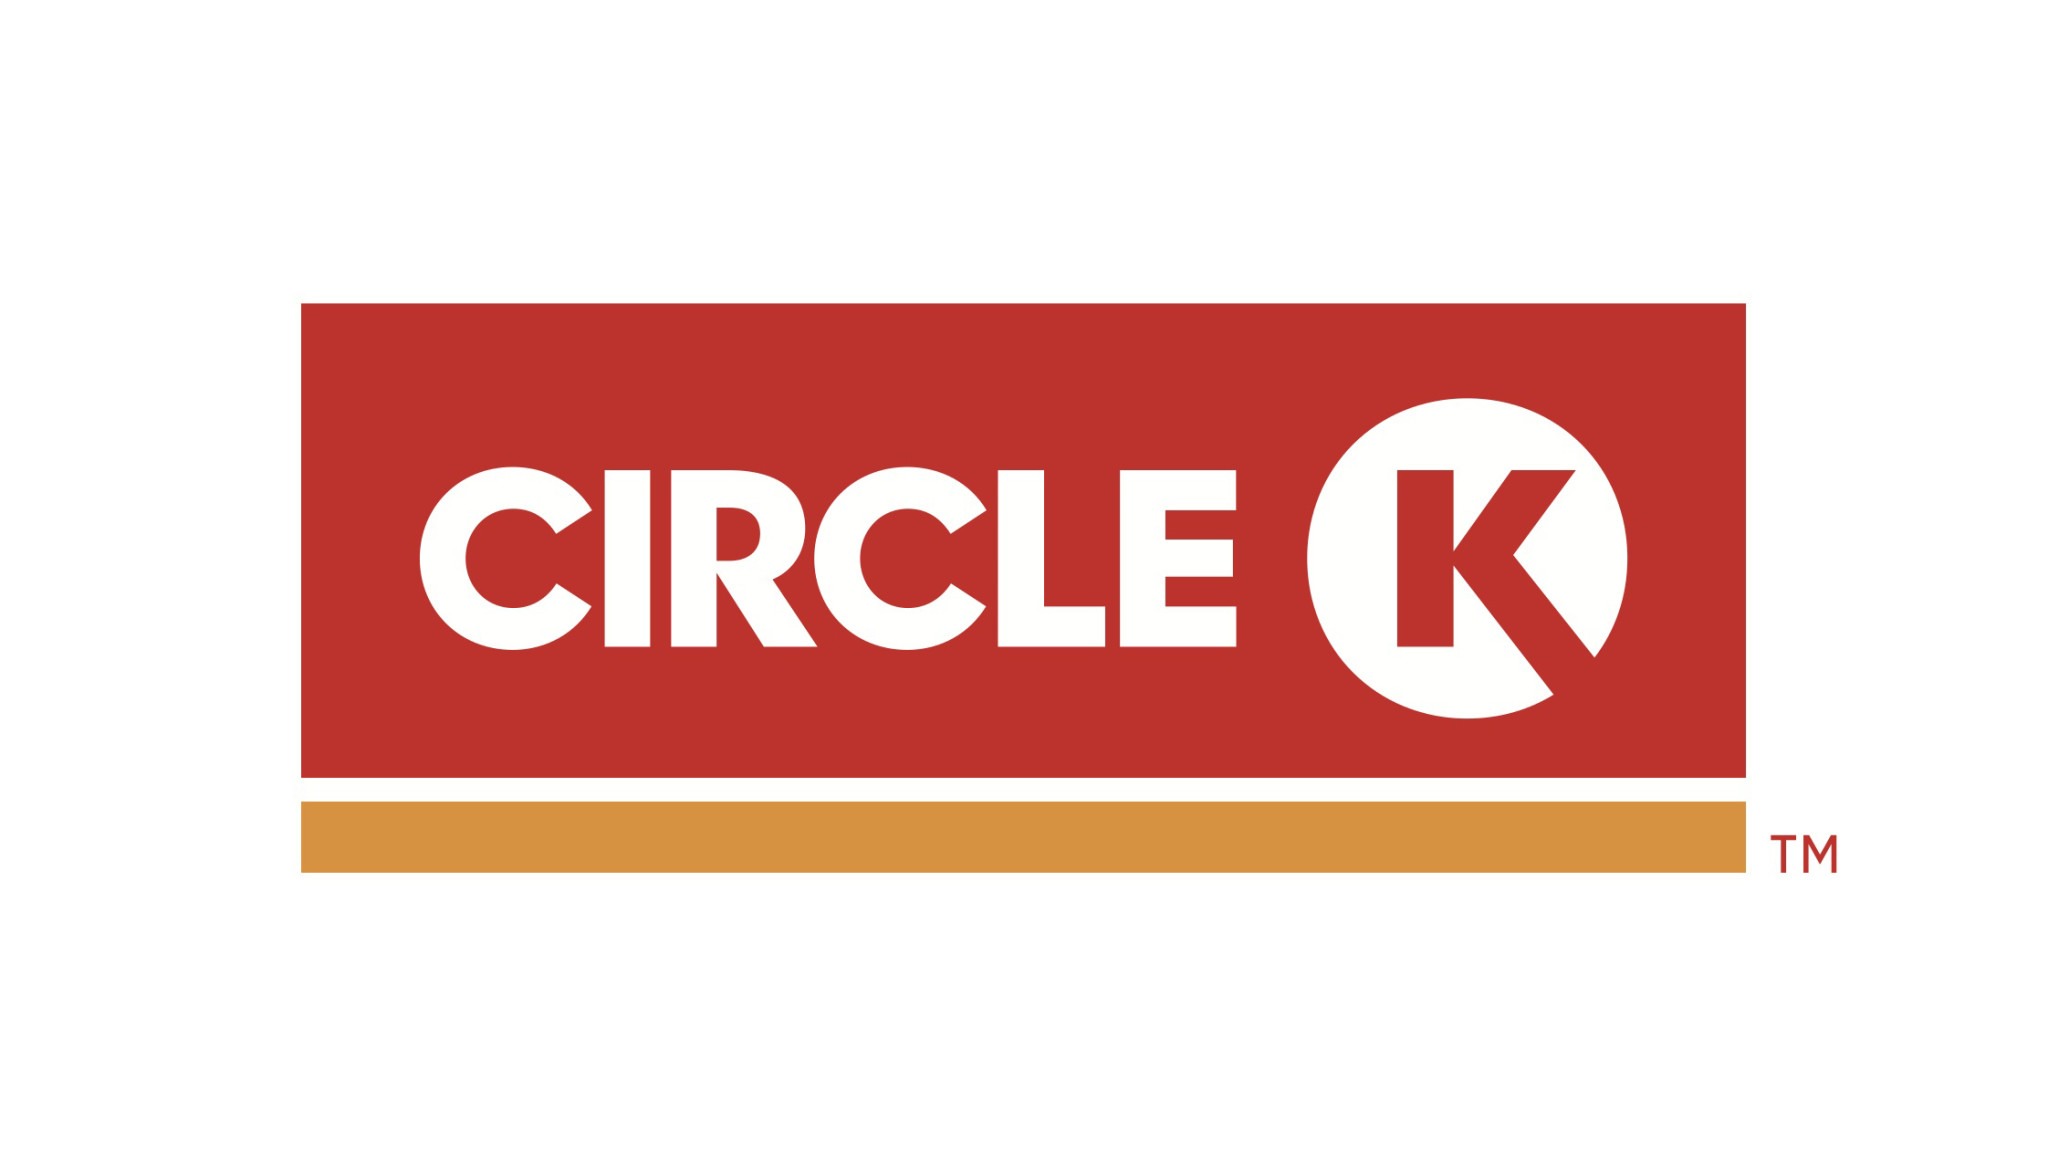 circle-k